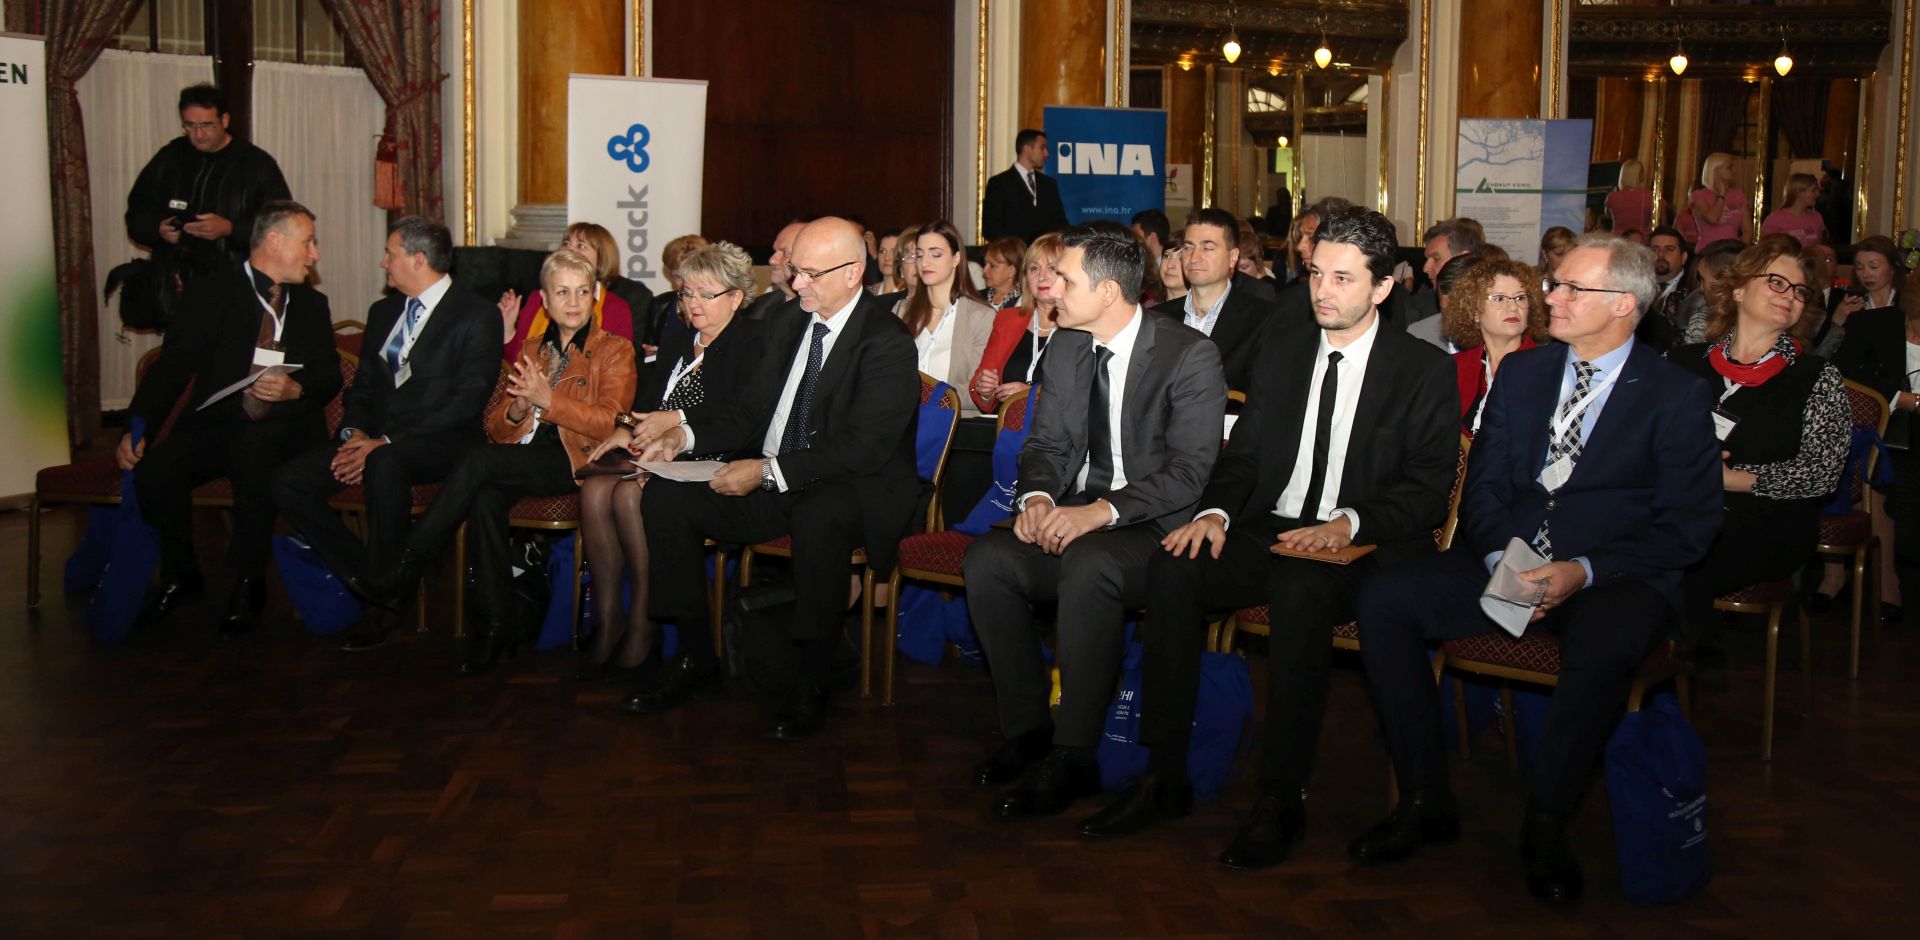 Zagreb, 21.11.2017 -  Na 9. konferenciji o drutveno odgovornom poslovanju raspravljalo se o odrivom razvoju i drutveno odgovornom poslovanju, odnosno njihovoj primjeni u gospodarstvu. U sklopu konferencije dodijeljene su nagrade indeks DOP-a u osam kategorija.  foto HINA / Zvonimir KUHTIÆ /zk